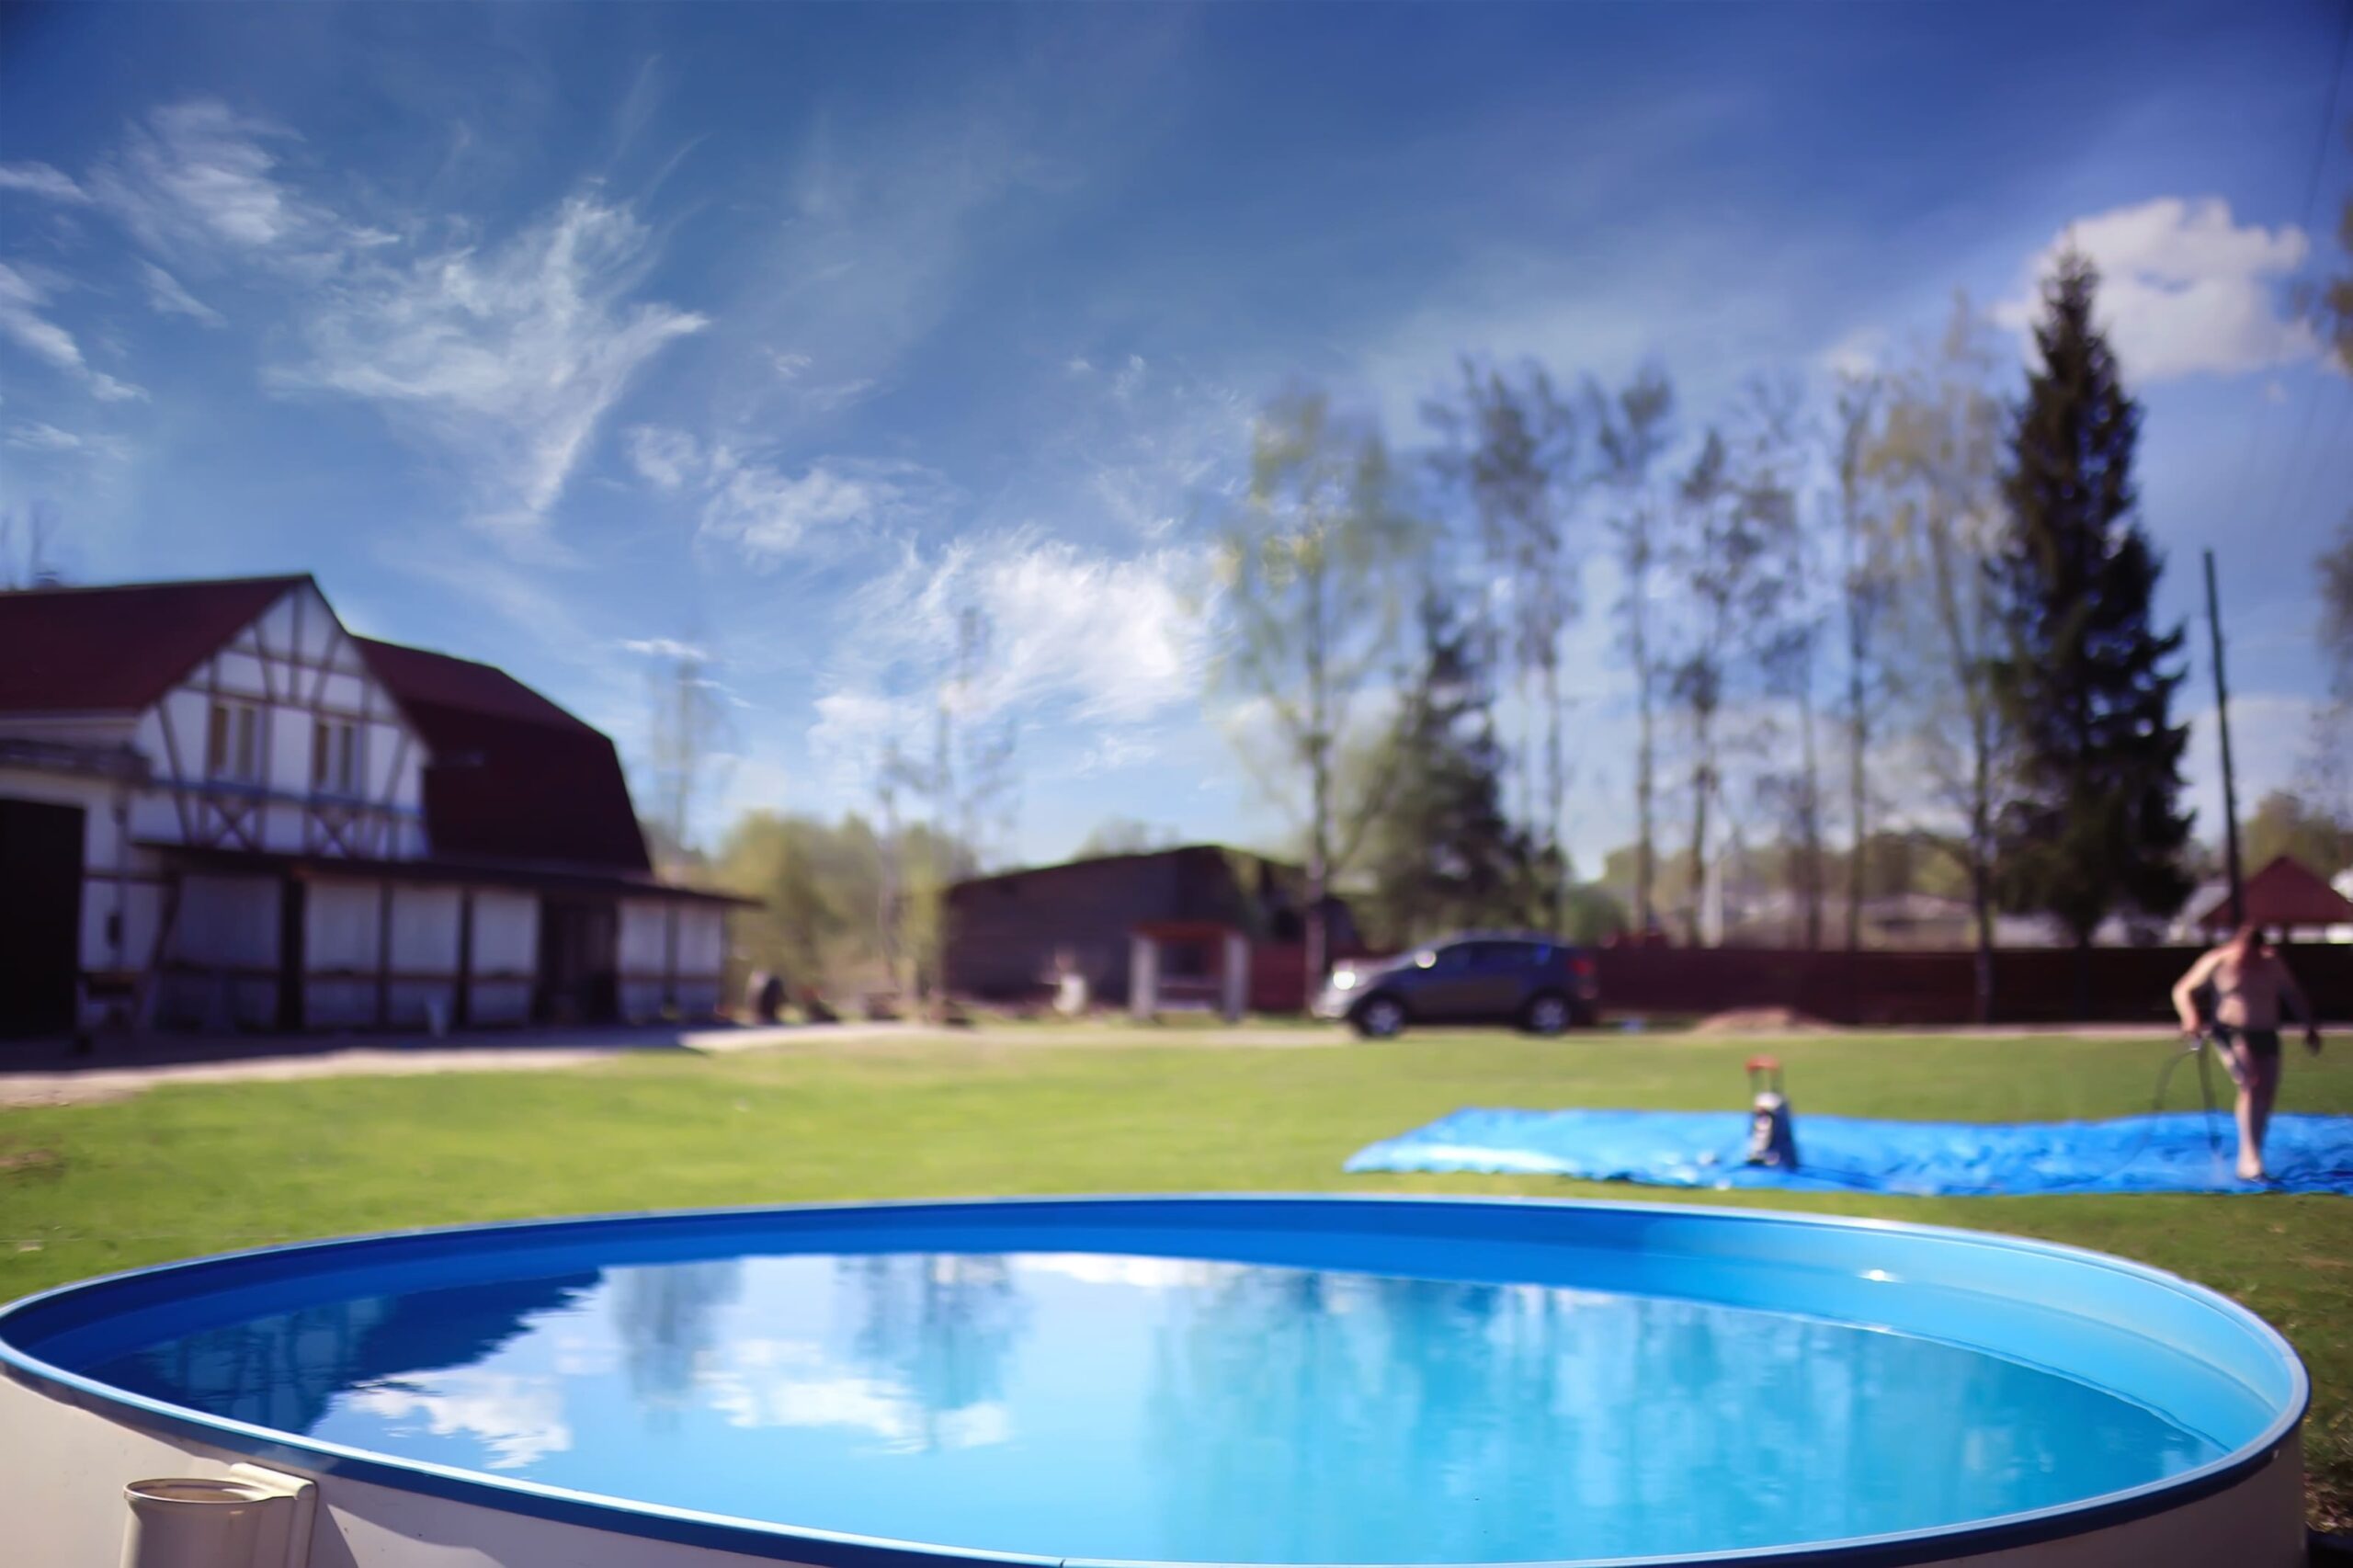 Pool im Garten: Eine erfrischende Oase der Entspannung - Wohntrends Magazin